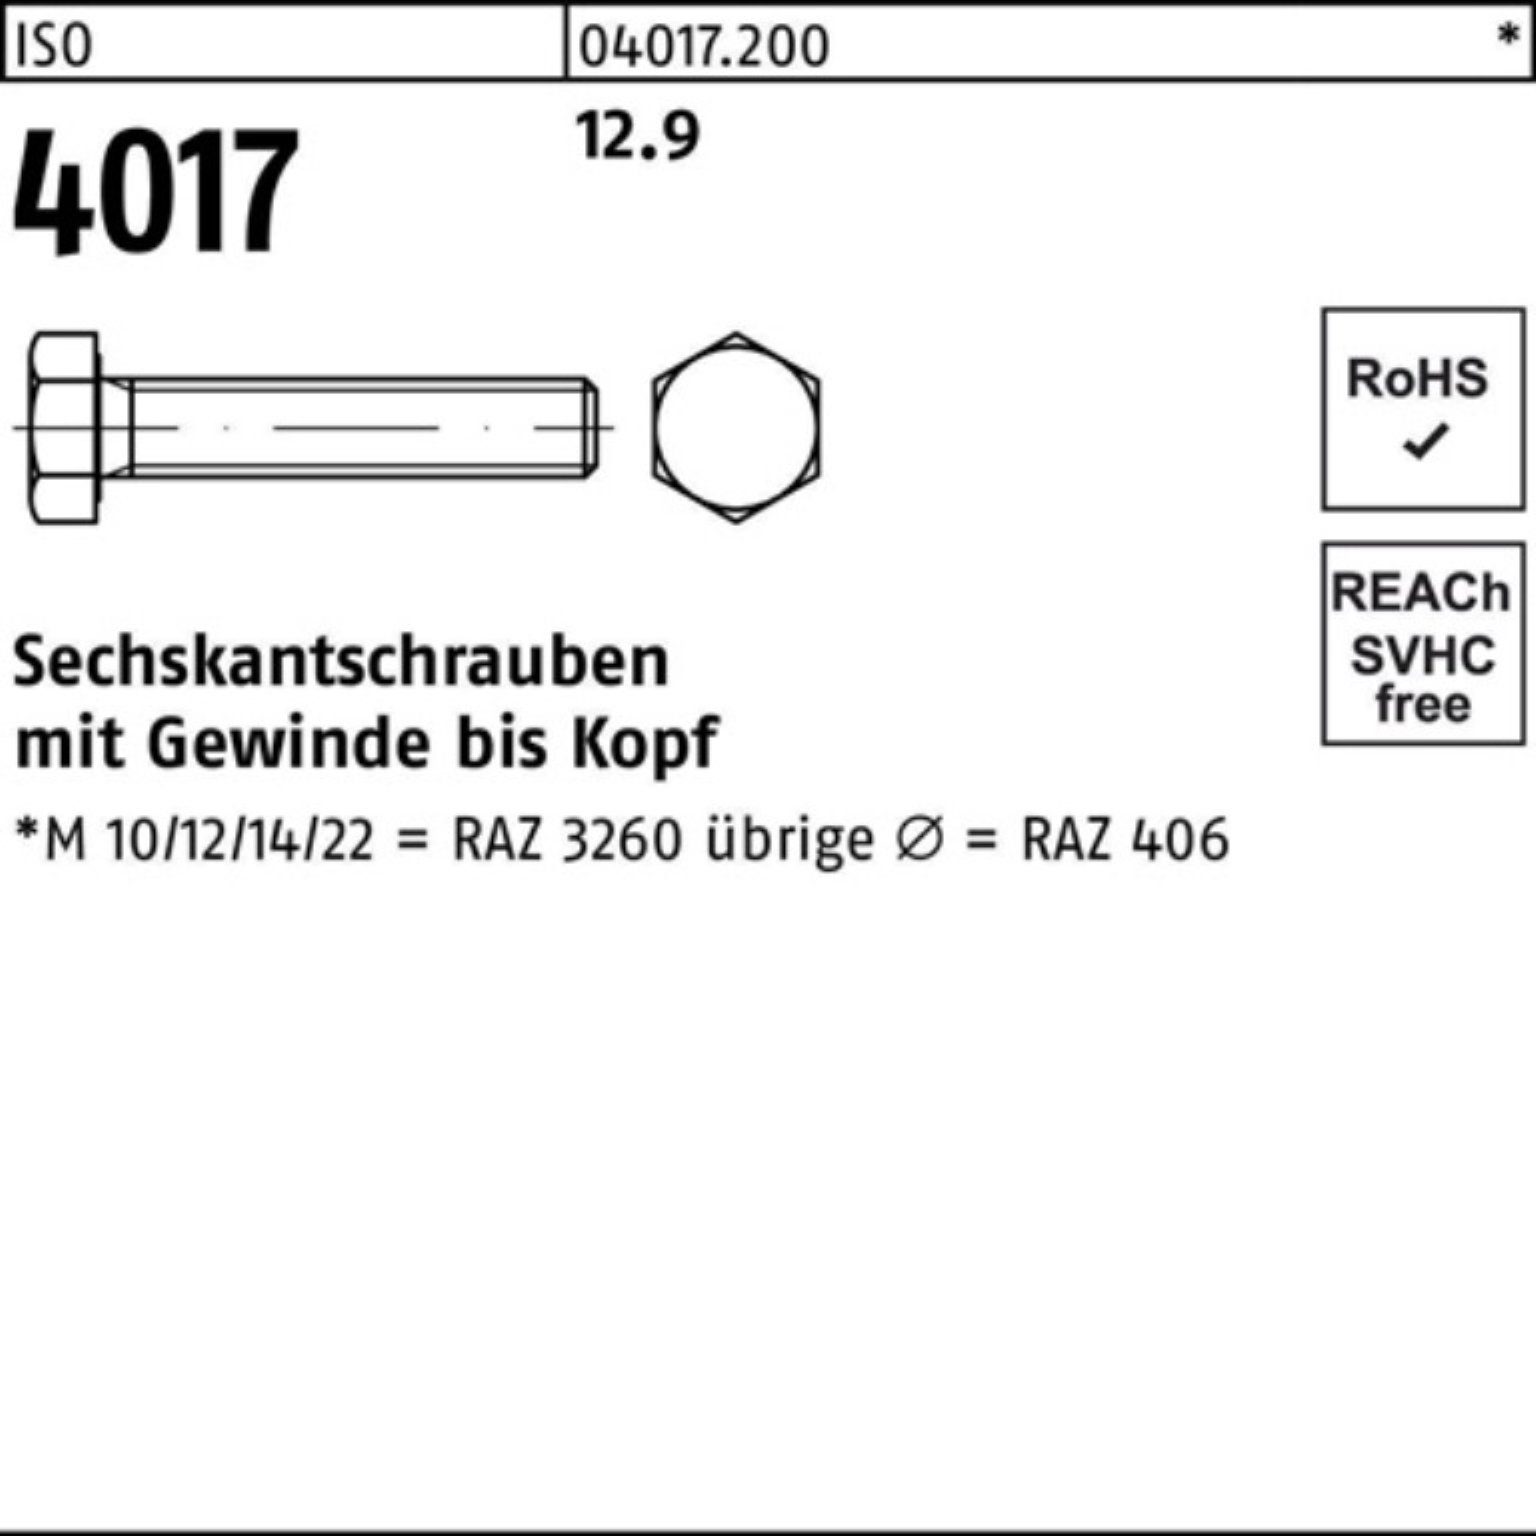 VG ISO Sechskantschraube 100er Pack Sechskantschraube Bufab M16x 12.9 Stück 4017 50 50 40 ISO